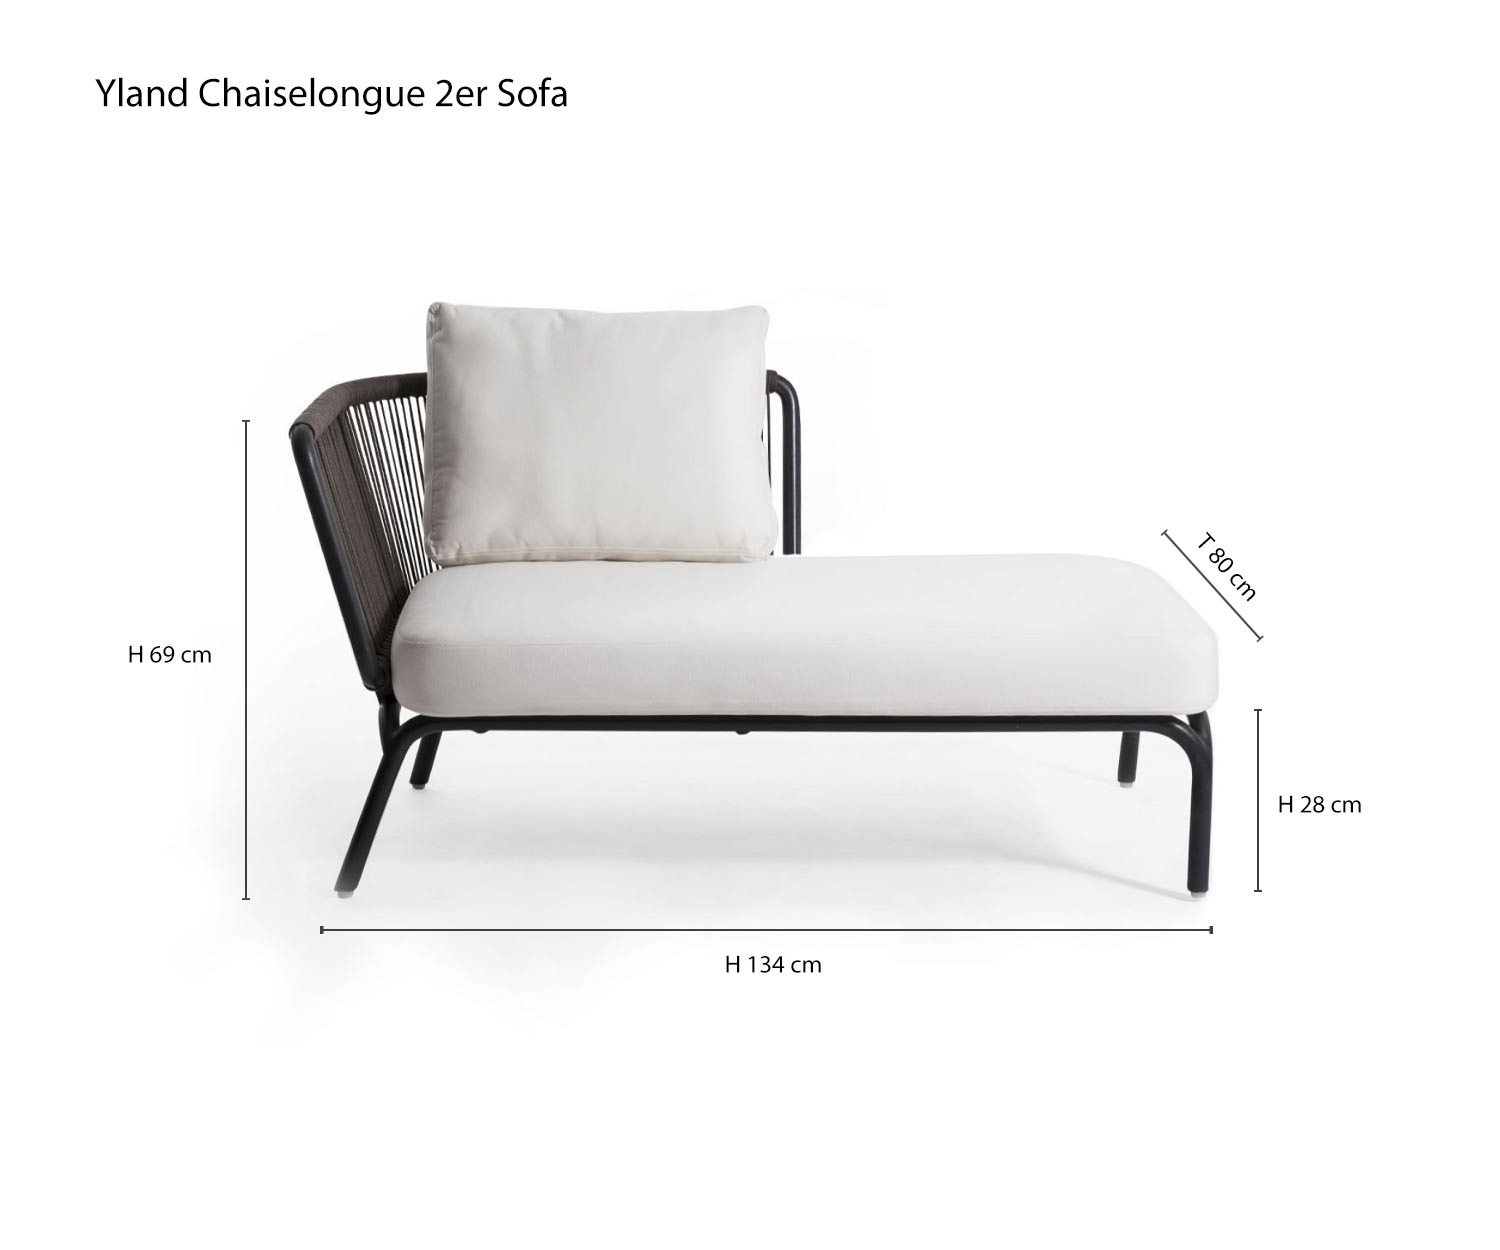 Chaise longue 2 places Canapé design Yland de Oasiq Esquisse Dimensions Dimensions